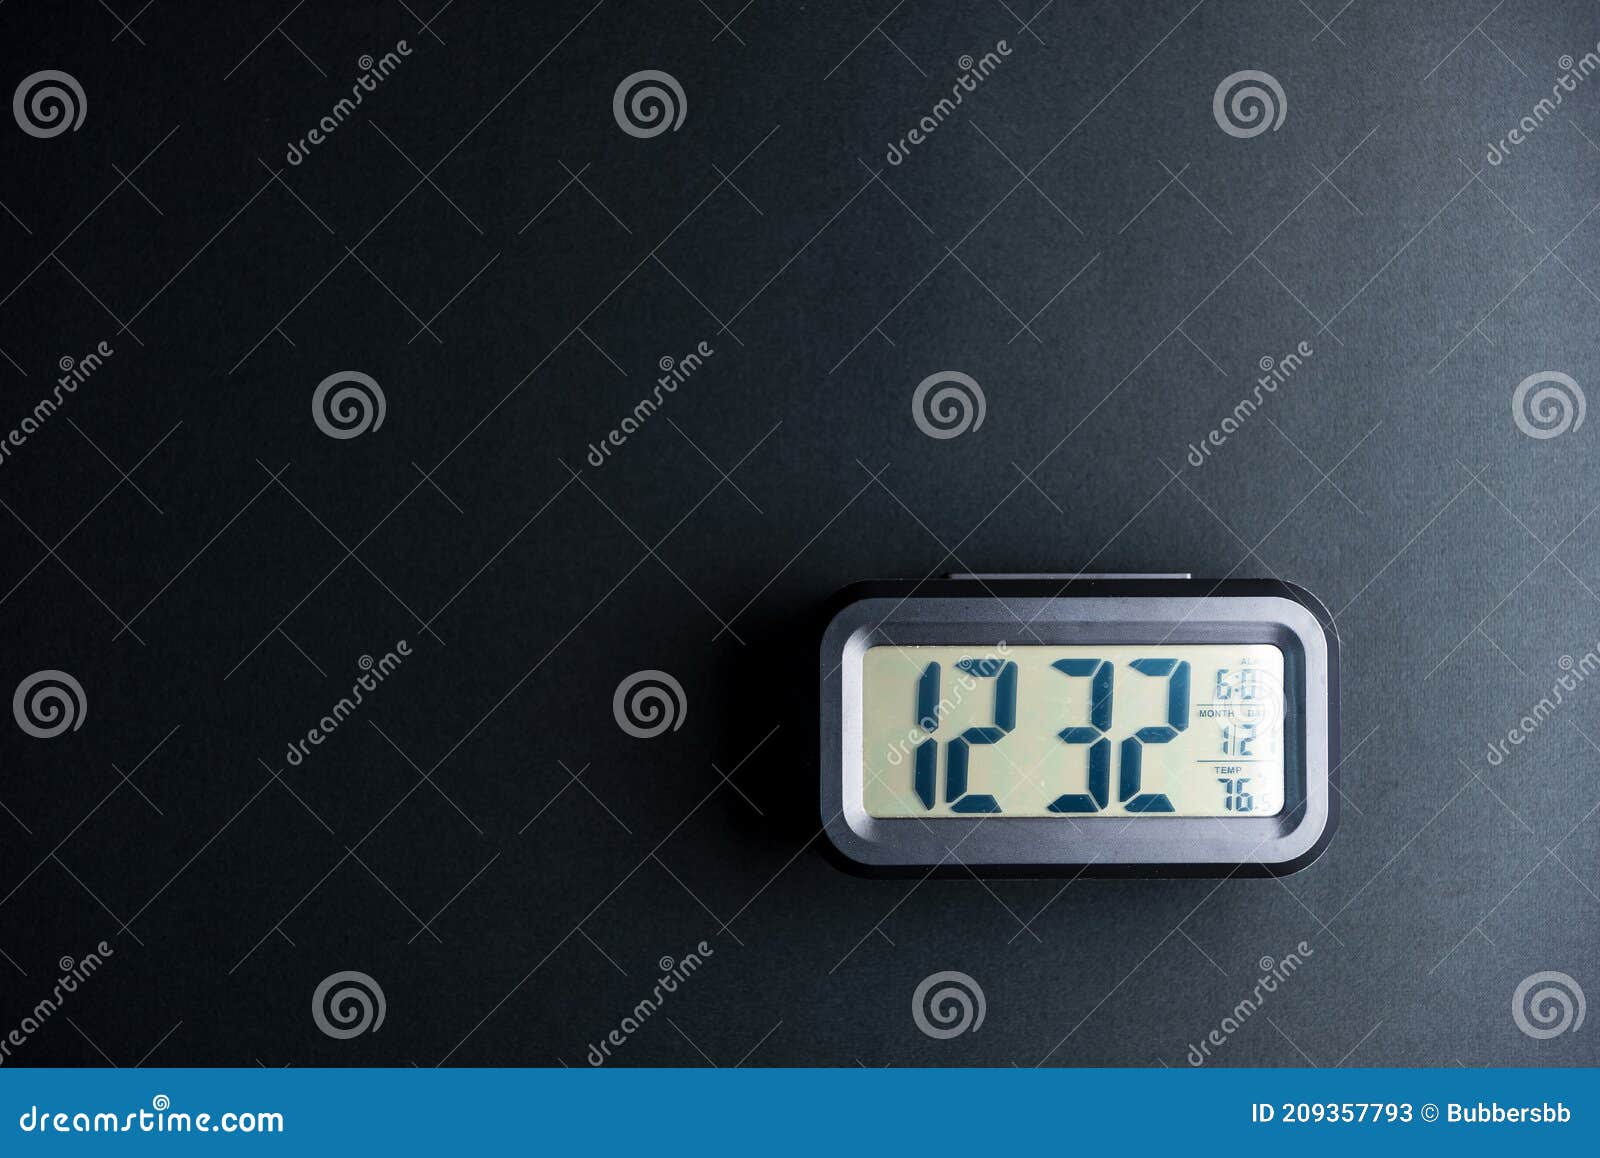 Digital Clock on Black Background Stock Image - Image of communication